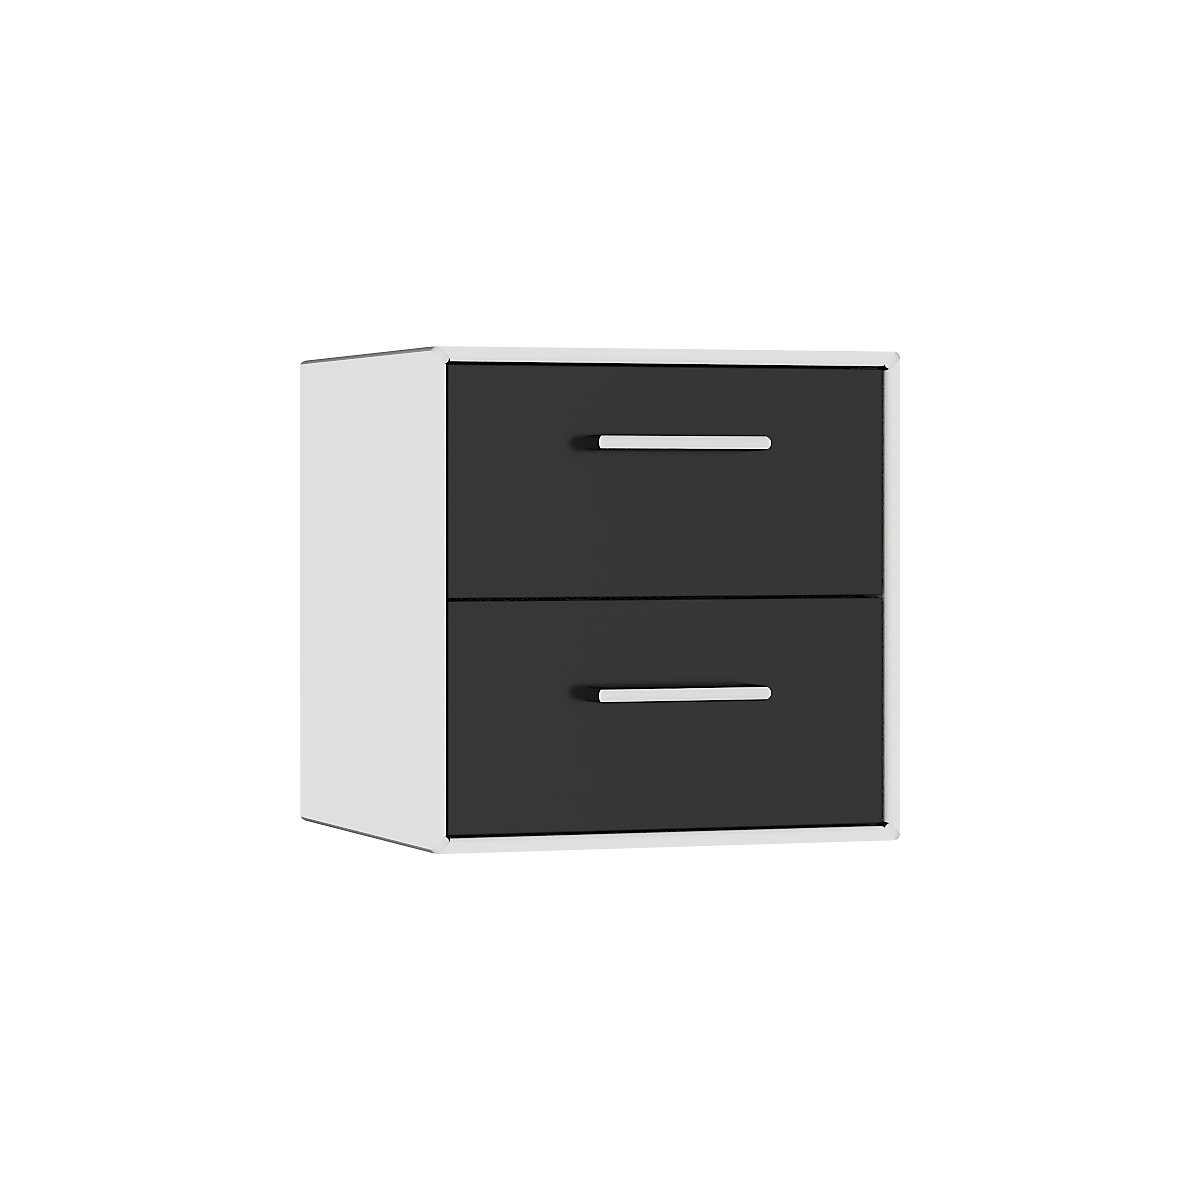 mauser – Cuie individuală, suspendată, 2 sertare, lățime 385 mm, alb semnal / negru intens